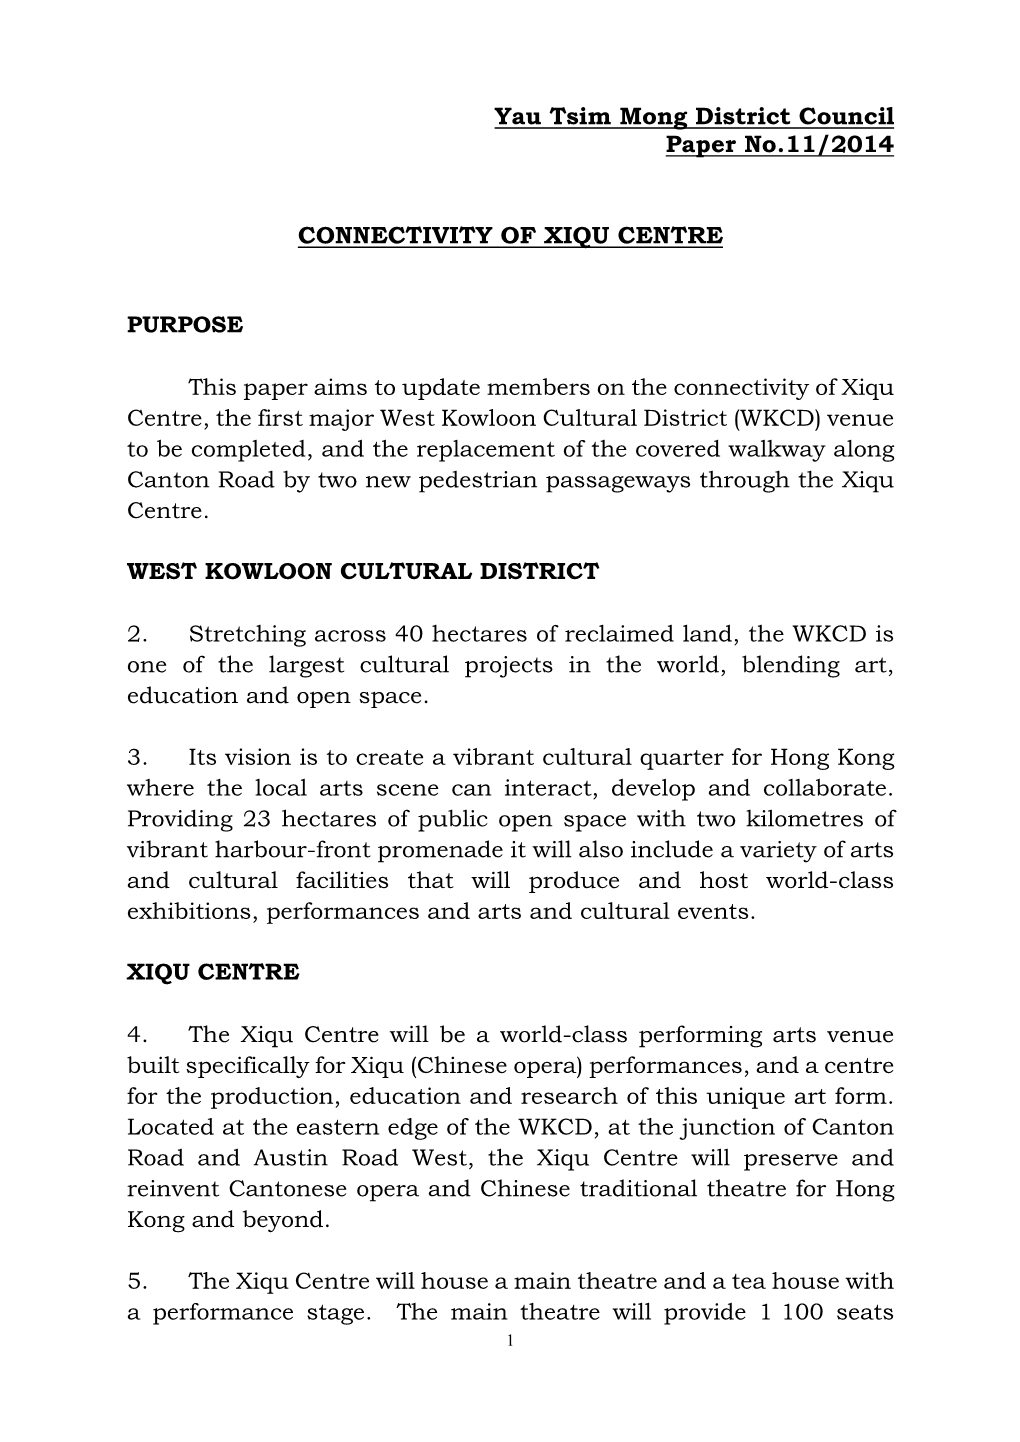 Connectivity of Xiqu Centre